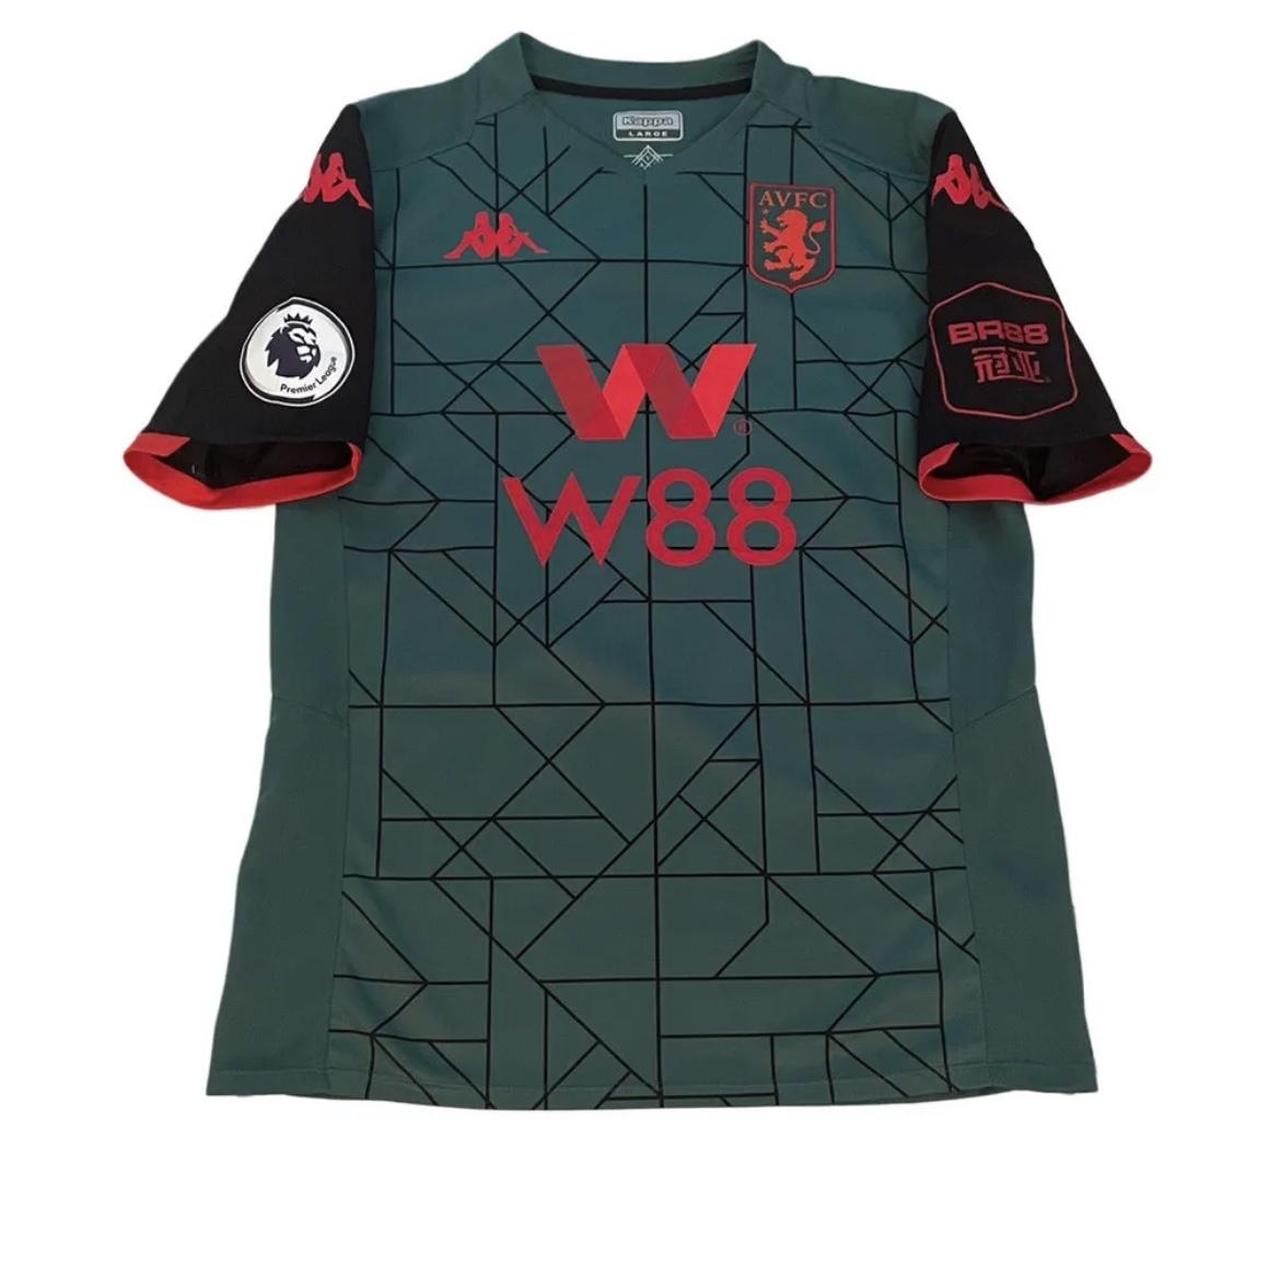 aston villa 2019 20 third kit